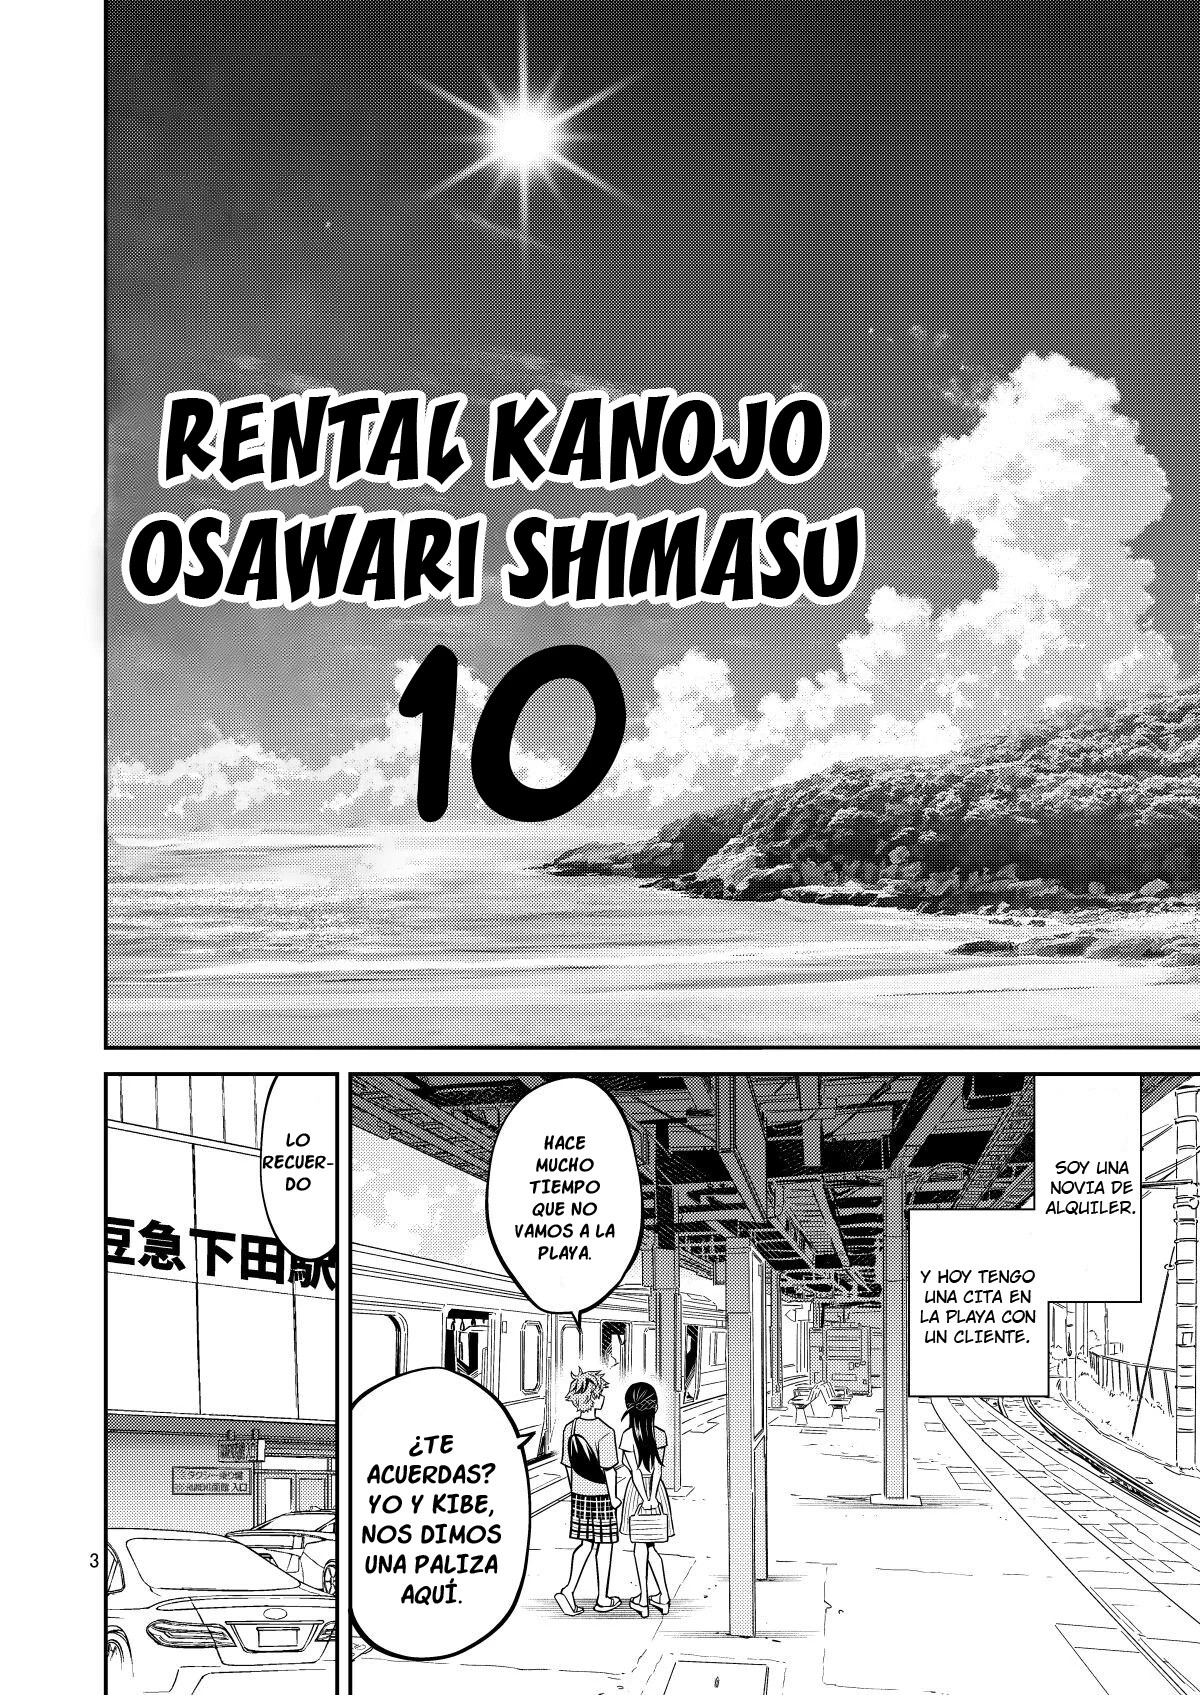 RENTAL Kanojo Osawari Shimasu parte 10